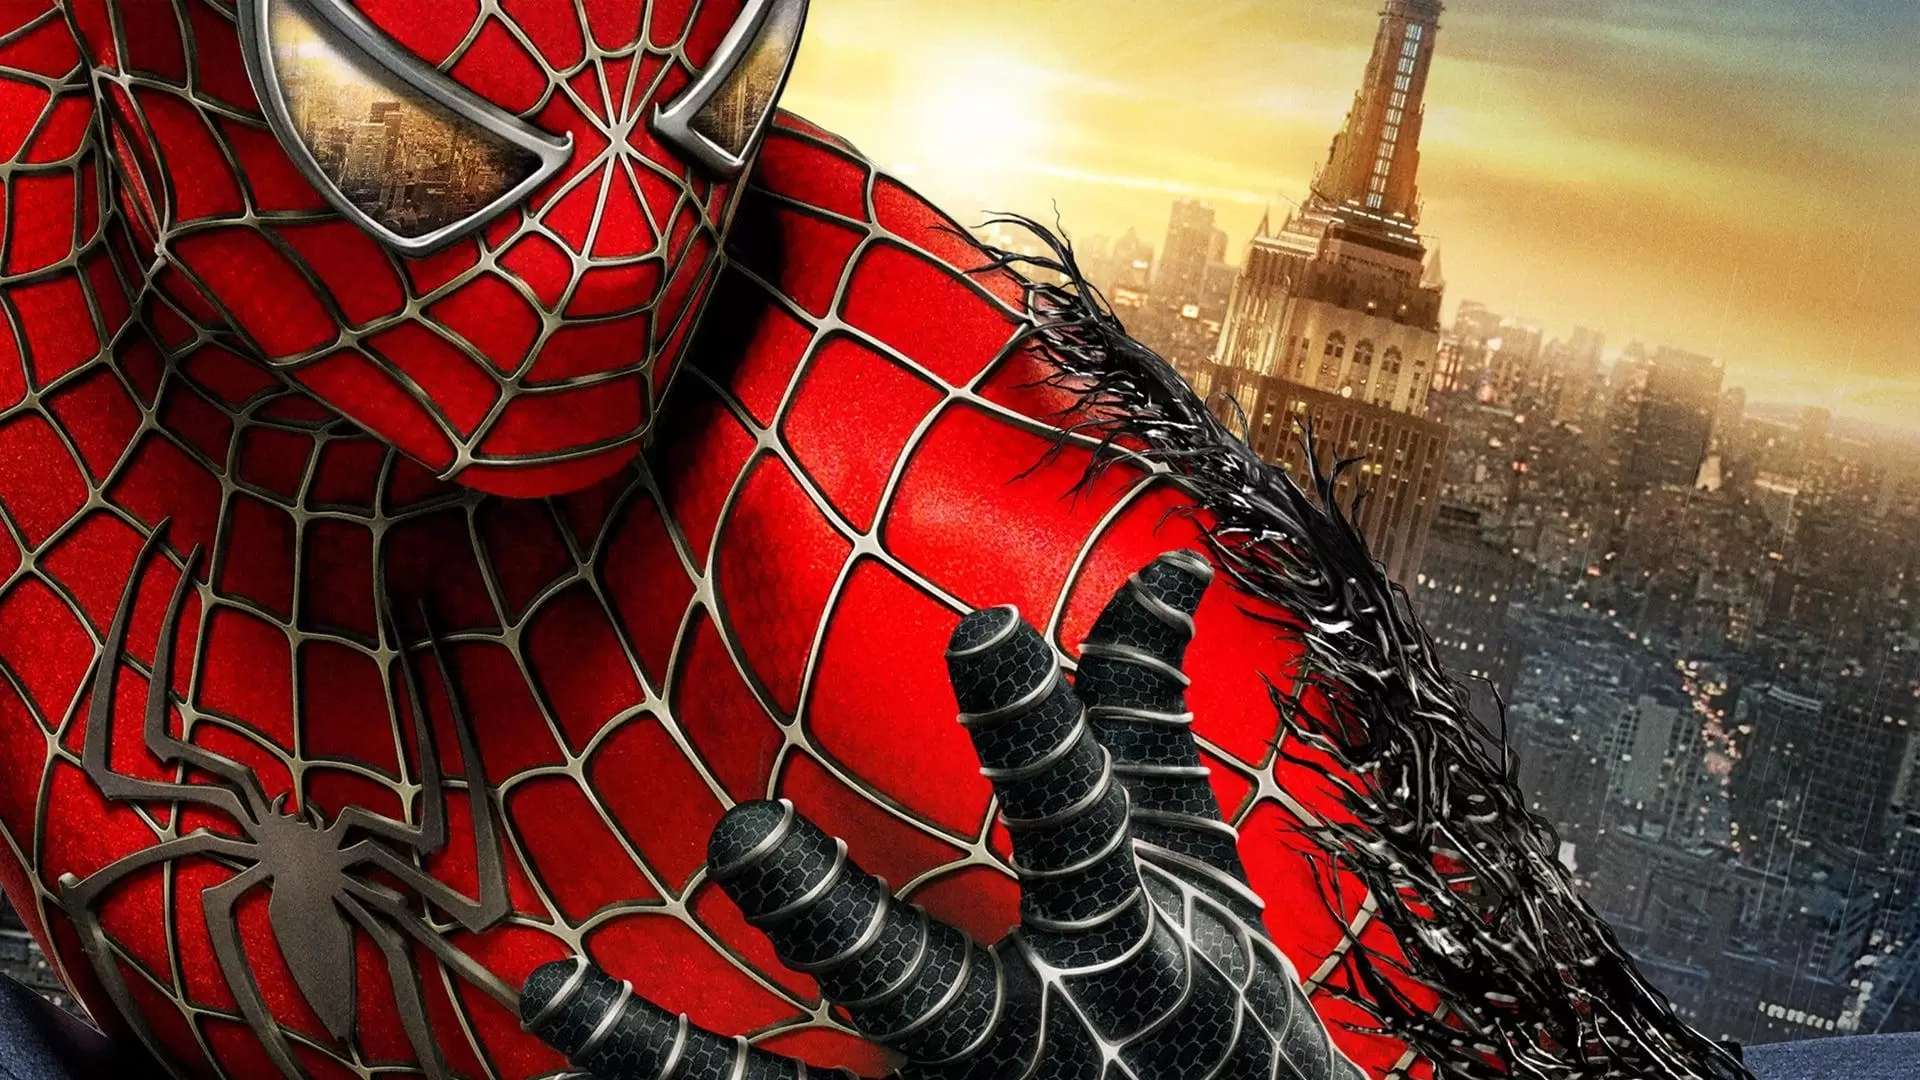 دانلود فیلم Spider-Man 3 2007 (مرد عنکبوتی۳) با زیرنویس فارسی و تماشای آنلاین